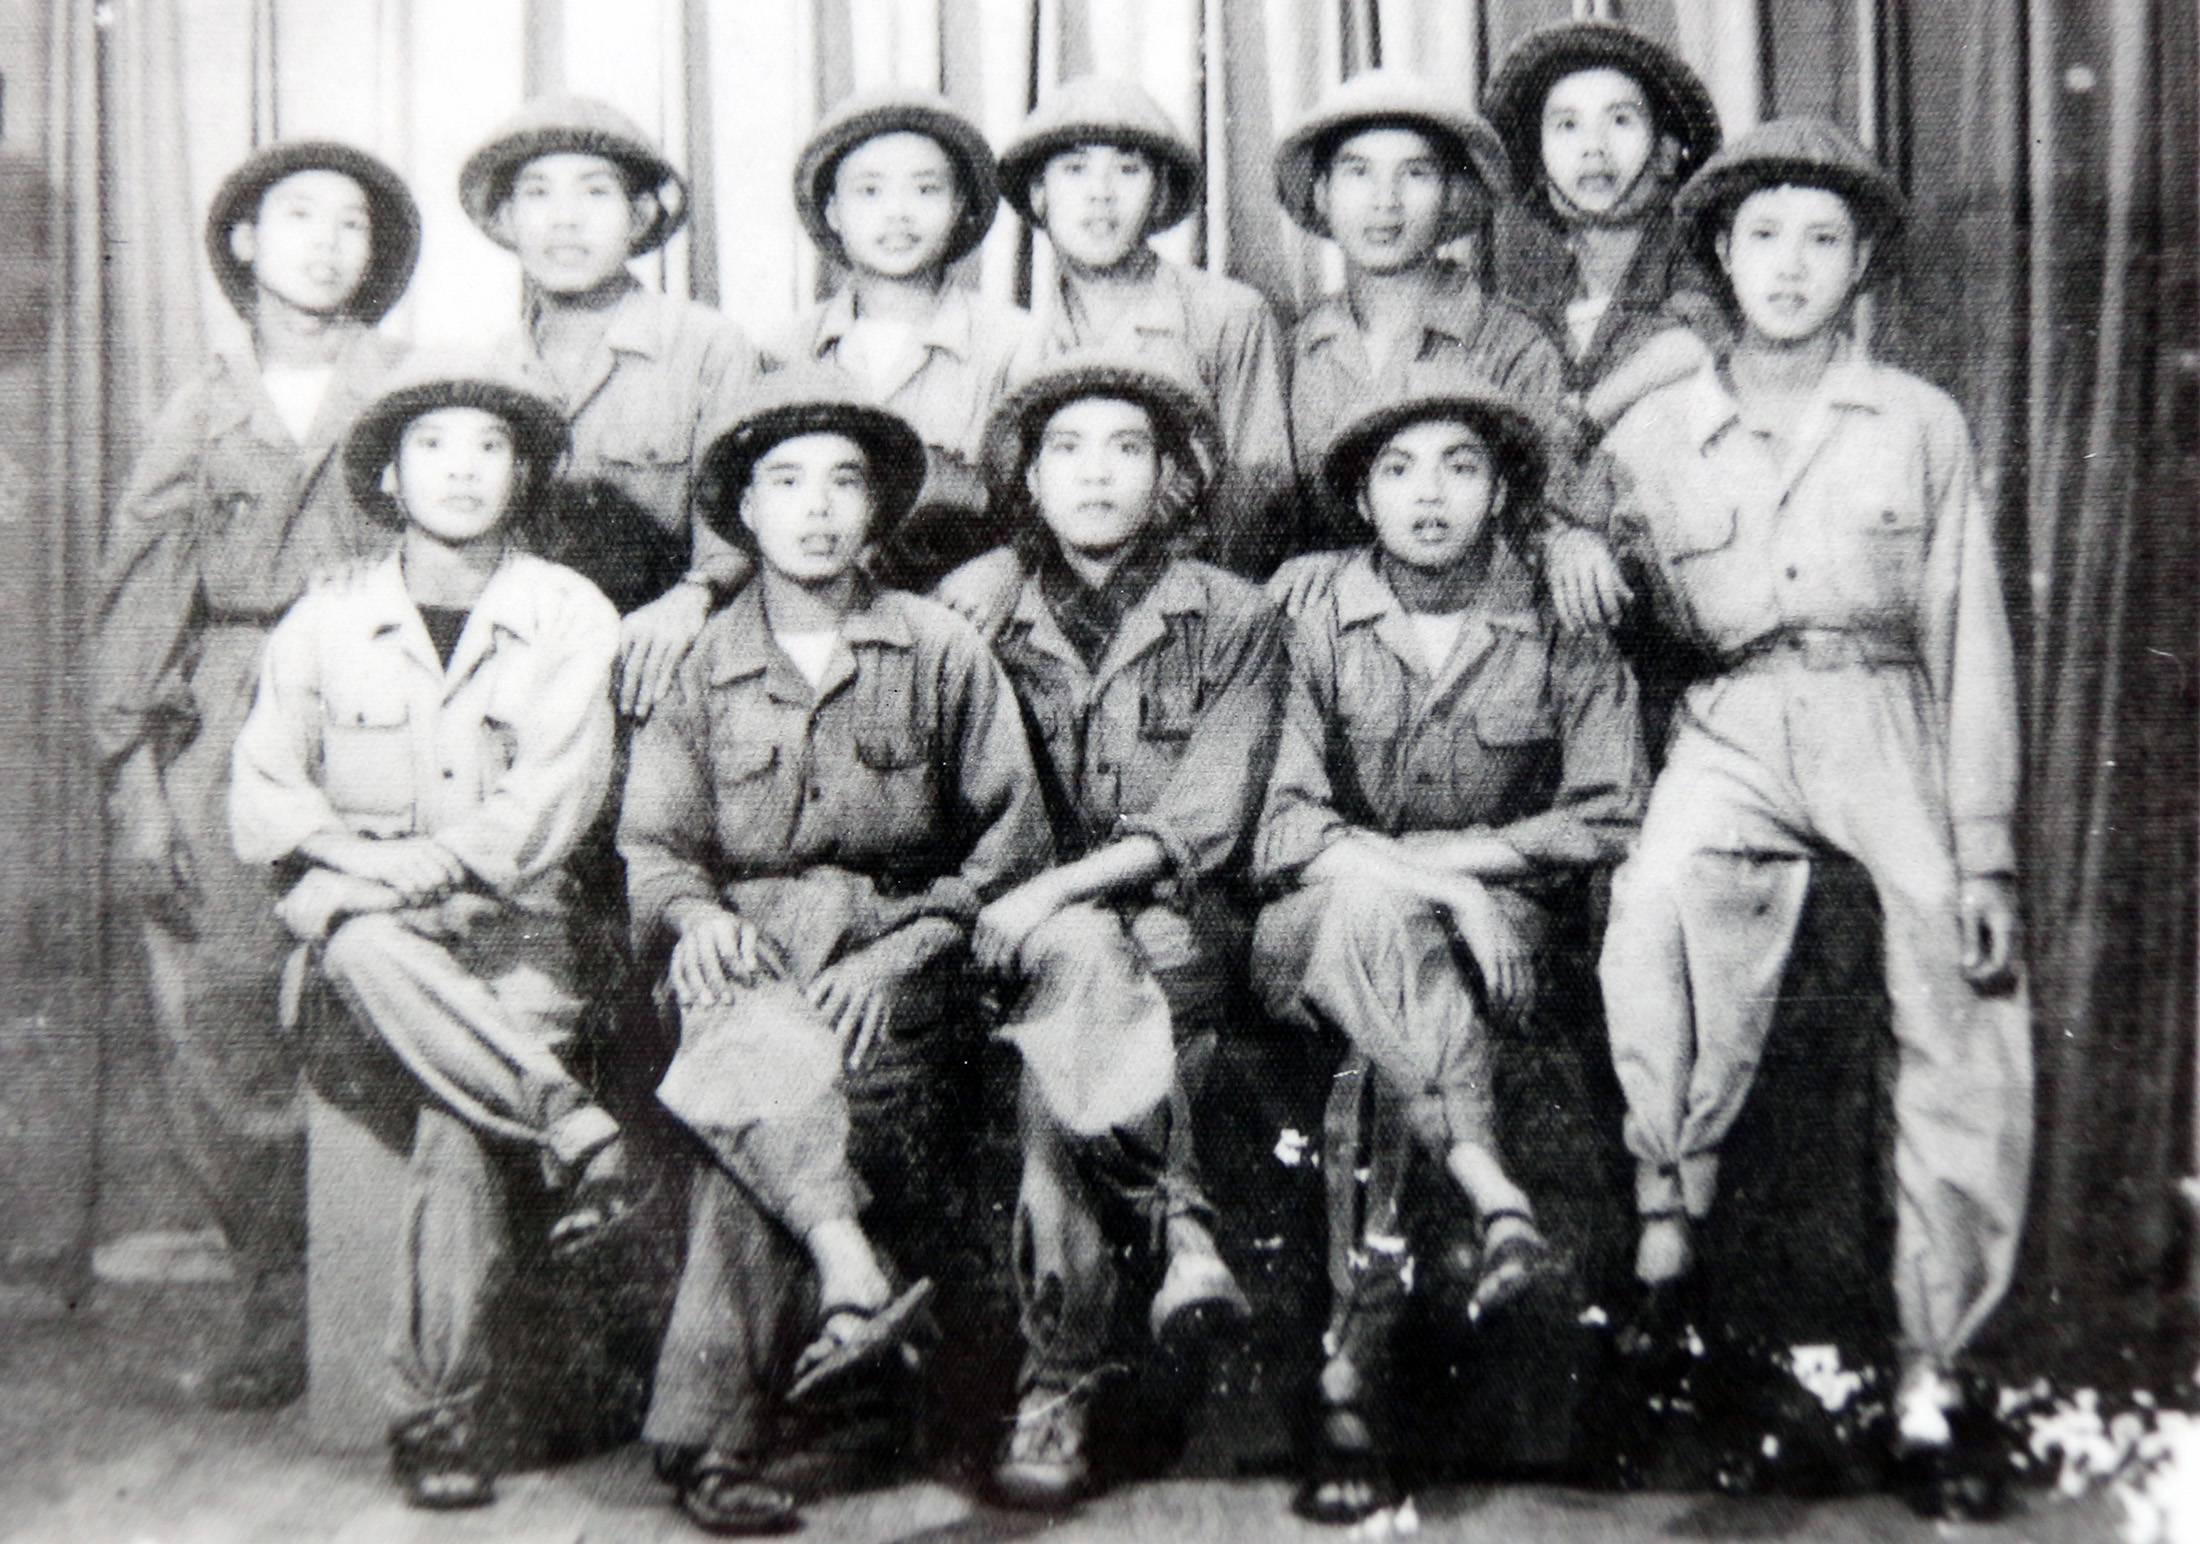 Nhà thơ Trần Cầu (hàng trên thứ 2 từ trái sang) cùng các đồng đội trong ngày tiếp quản Thủ đô tháng 10 năm 1954